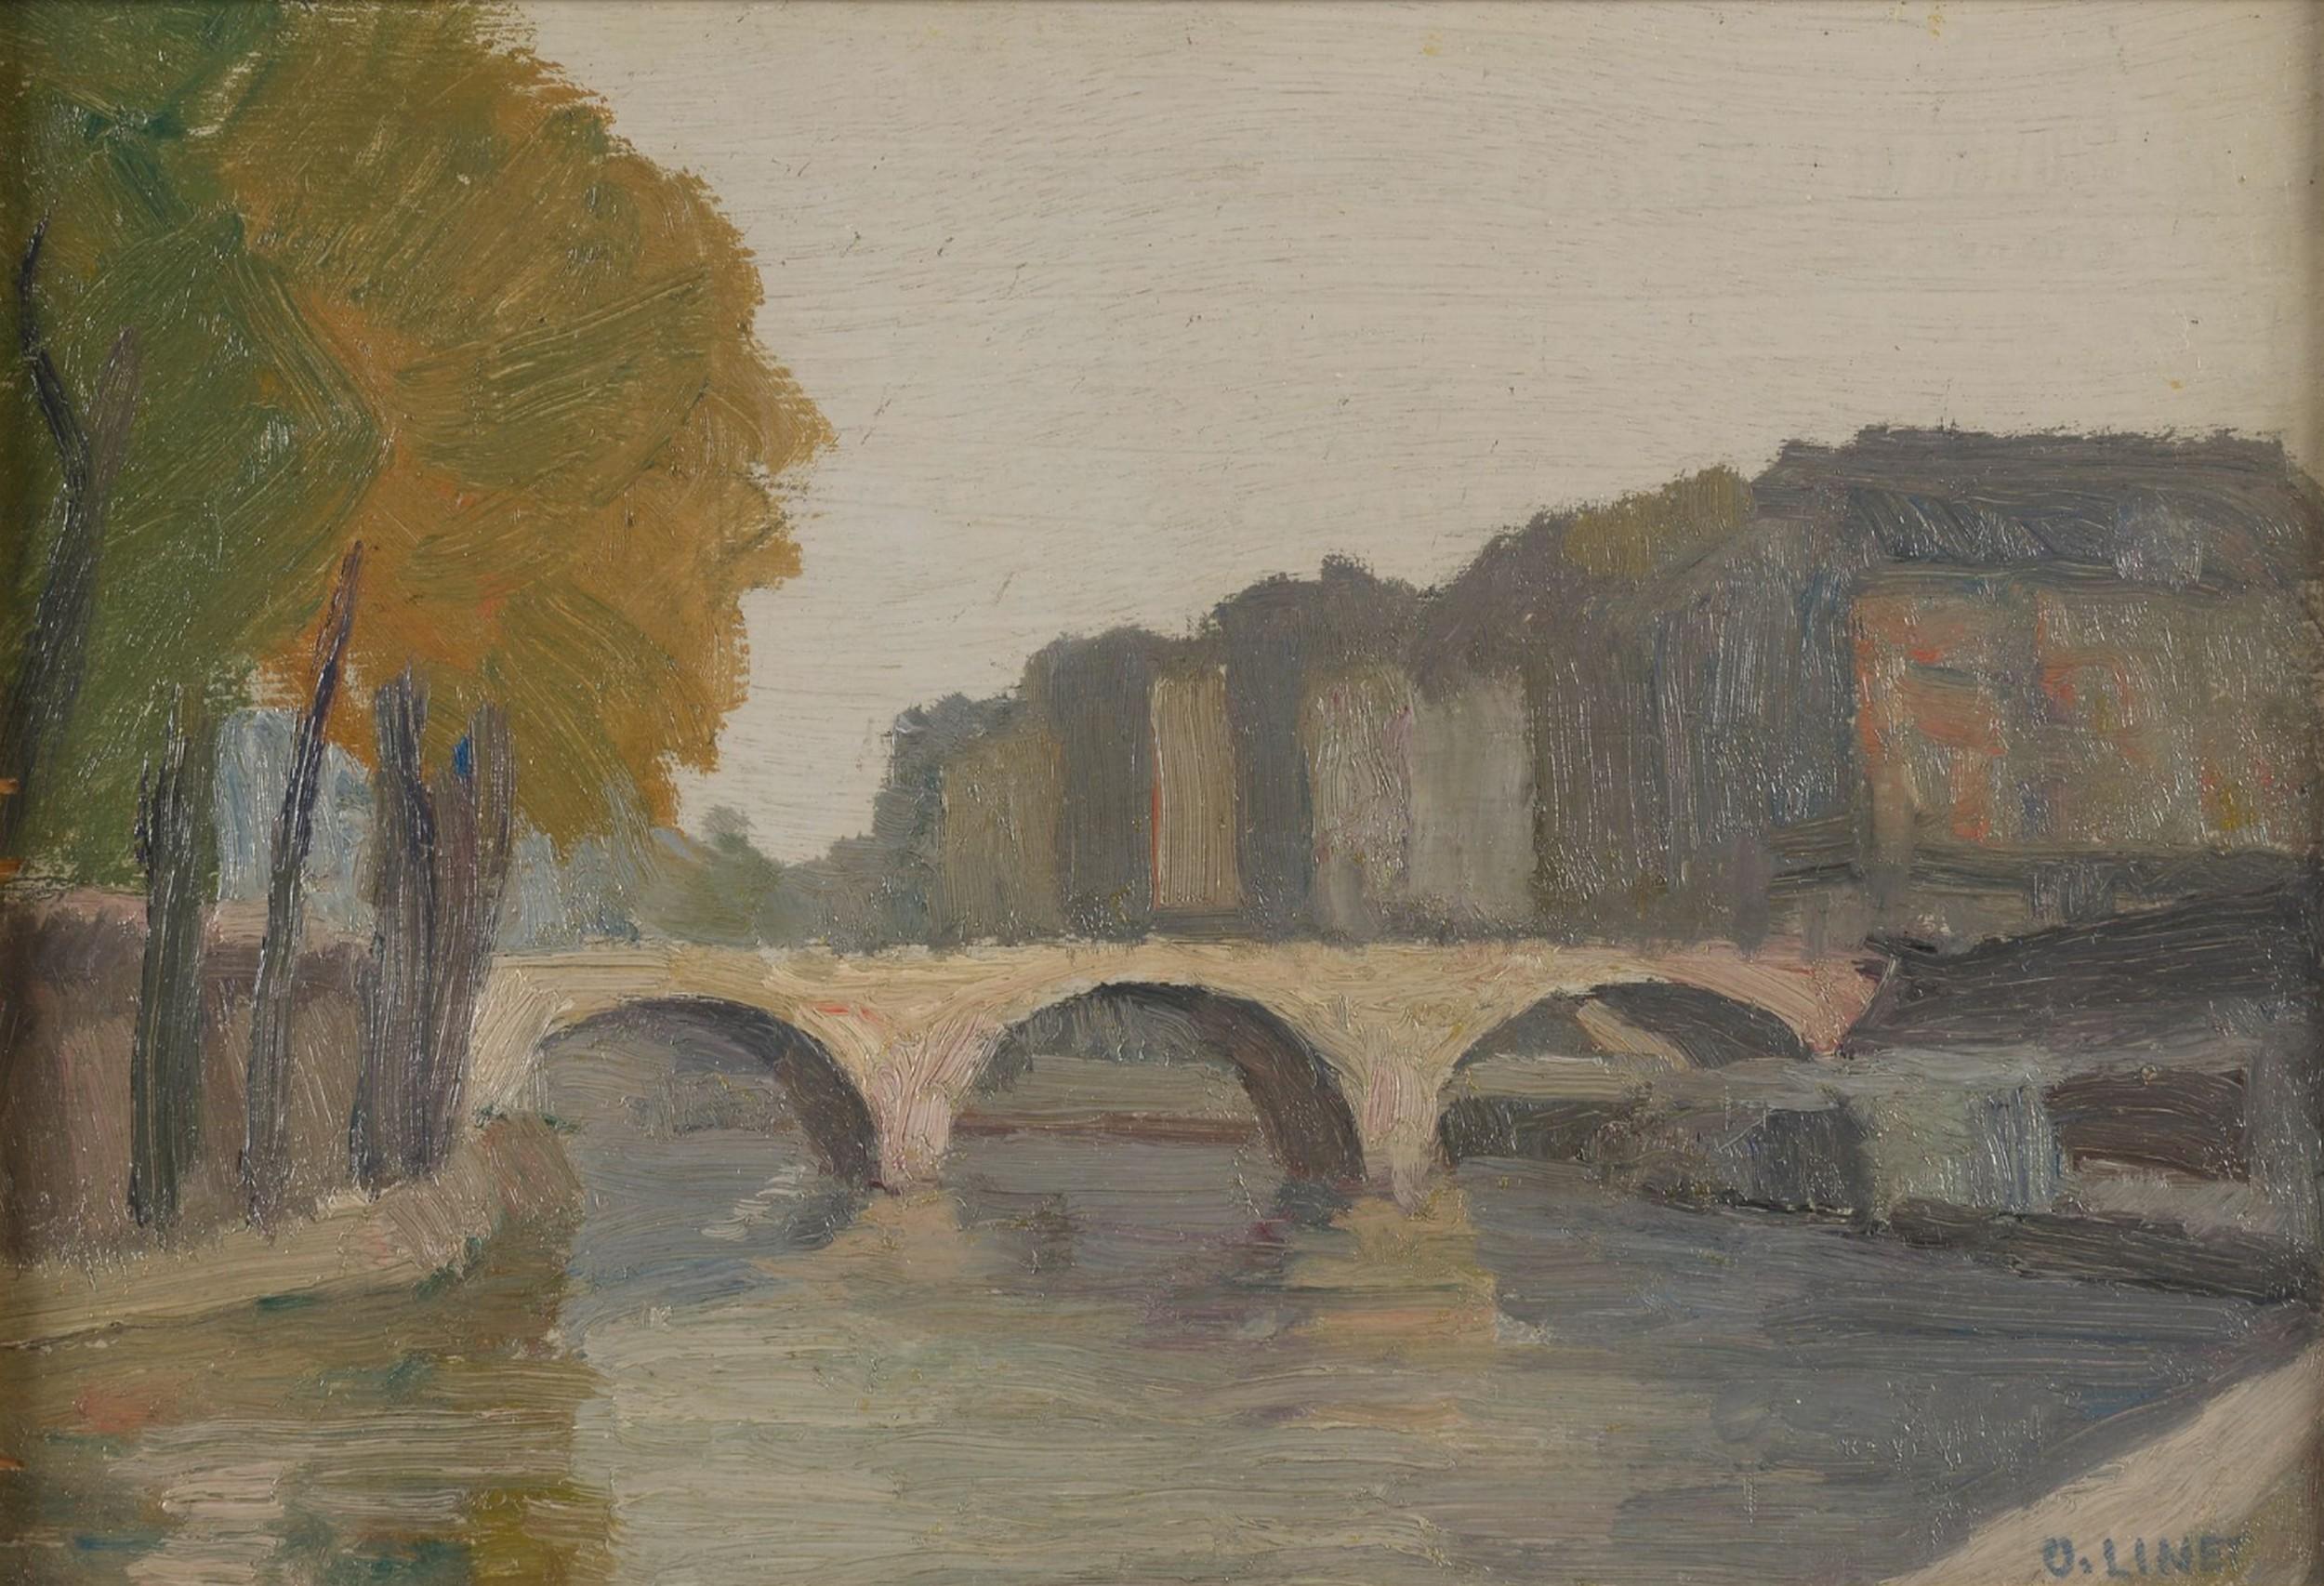 Octave Linet (1870-1962) 
La Seine à Paris, Der Fluss Seine in Paris
unterzeichnet  unten rechts
betitelt auf einem Label auf der Rückseite 
Öl auf Platte
24 x 35,5 cm
In gutem Zustand bis auf drei kleine Malereilücken am linken Rand, siehe